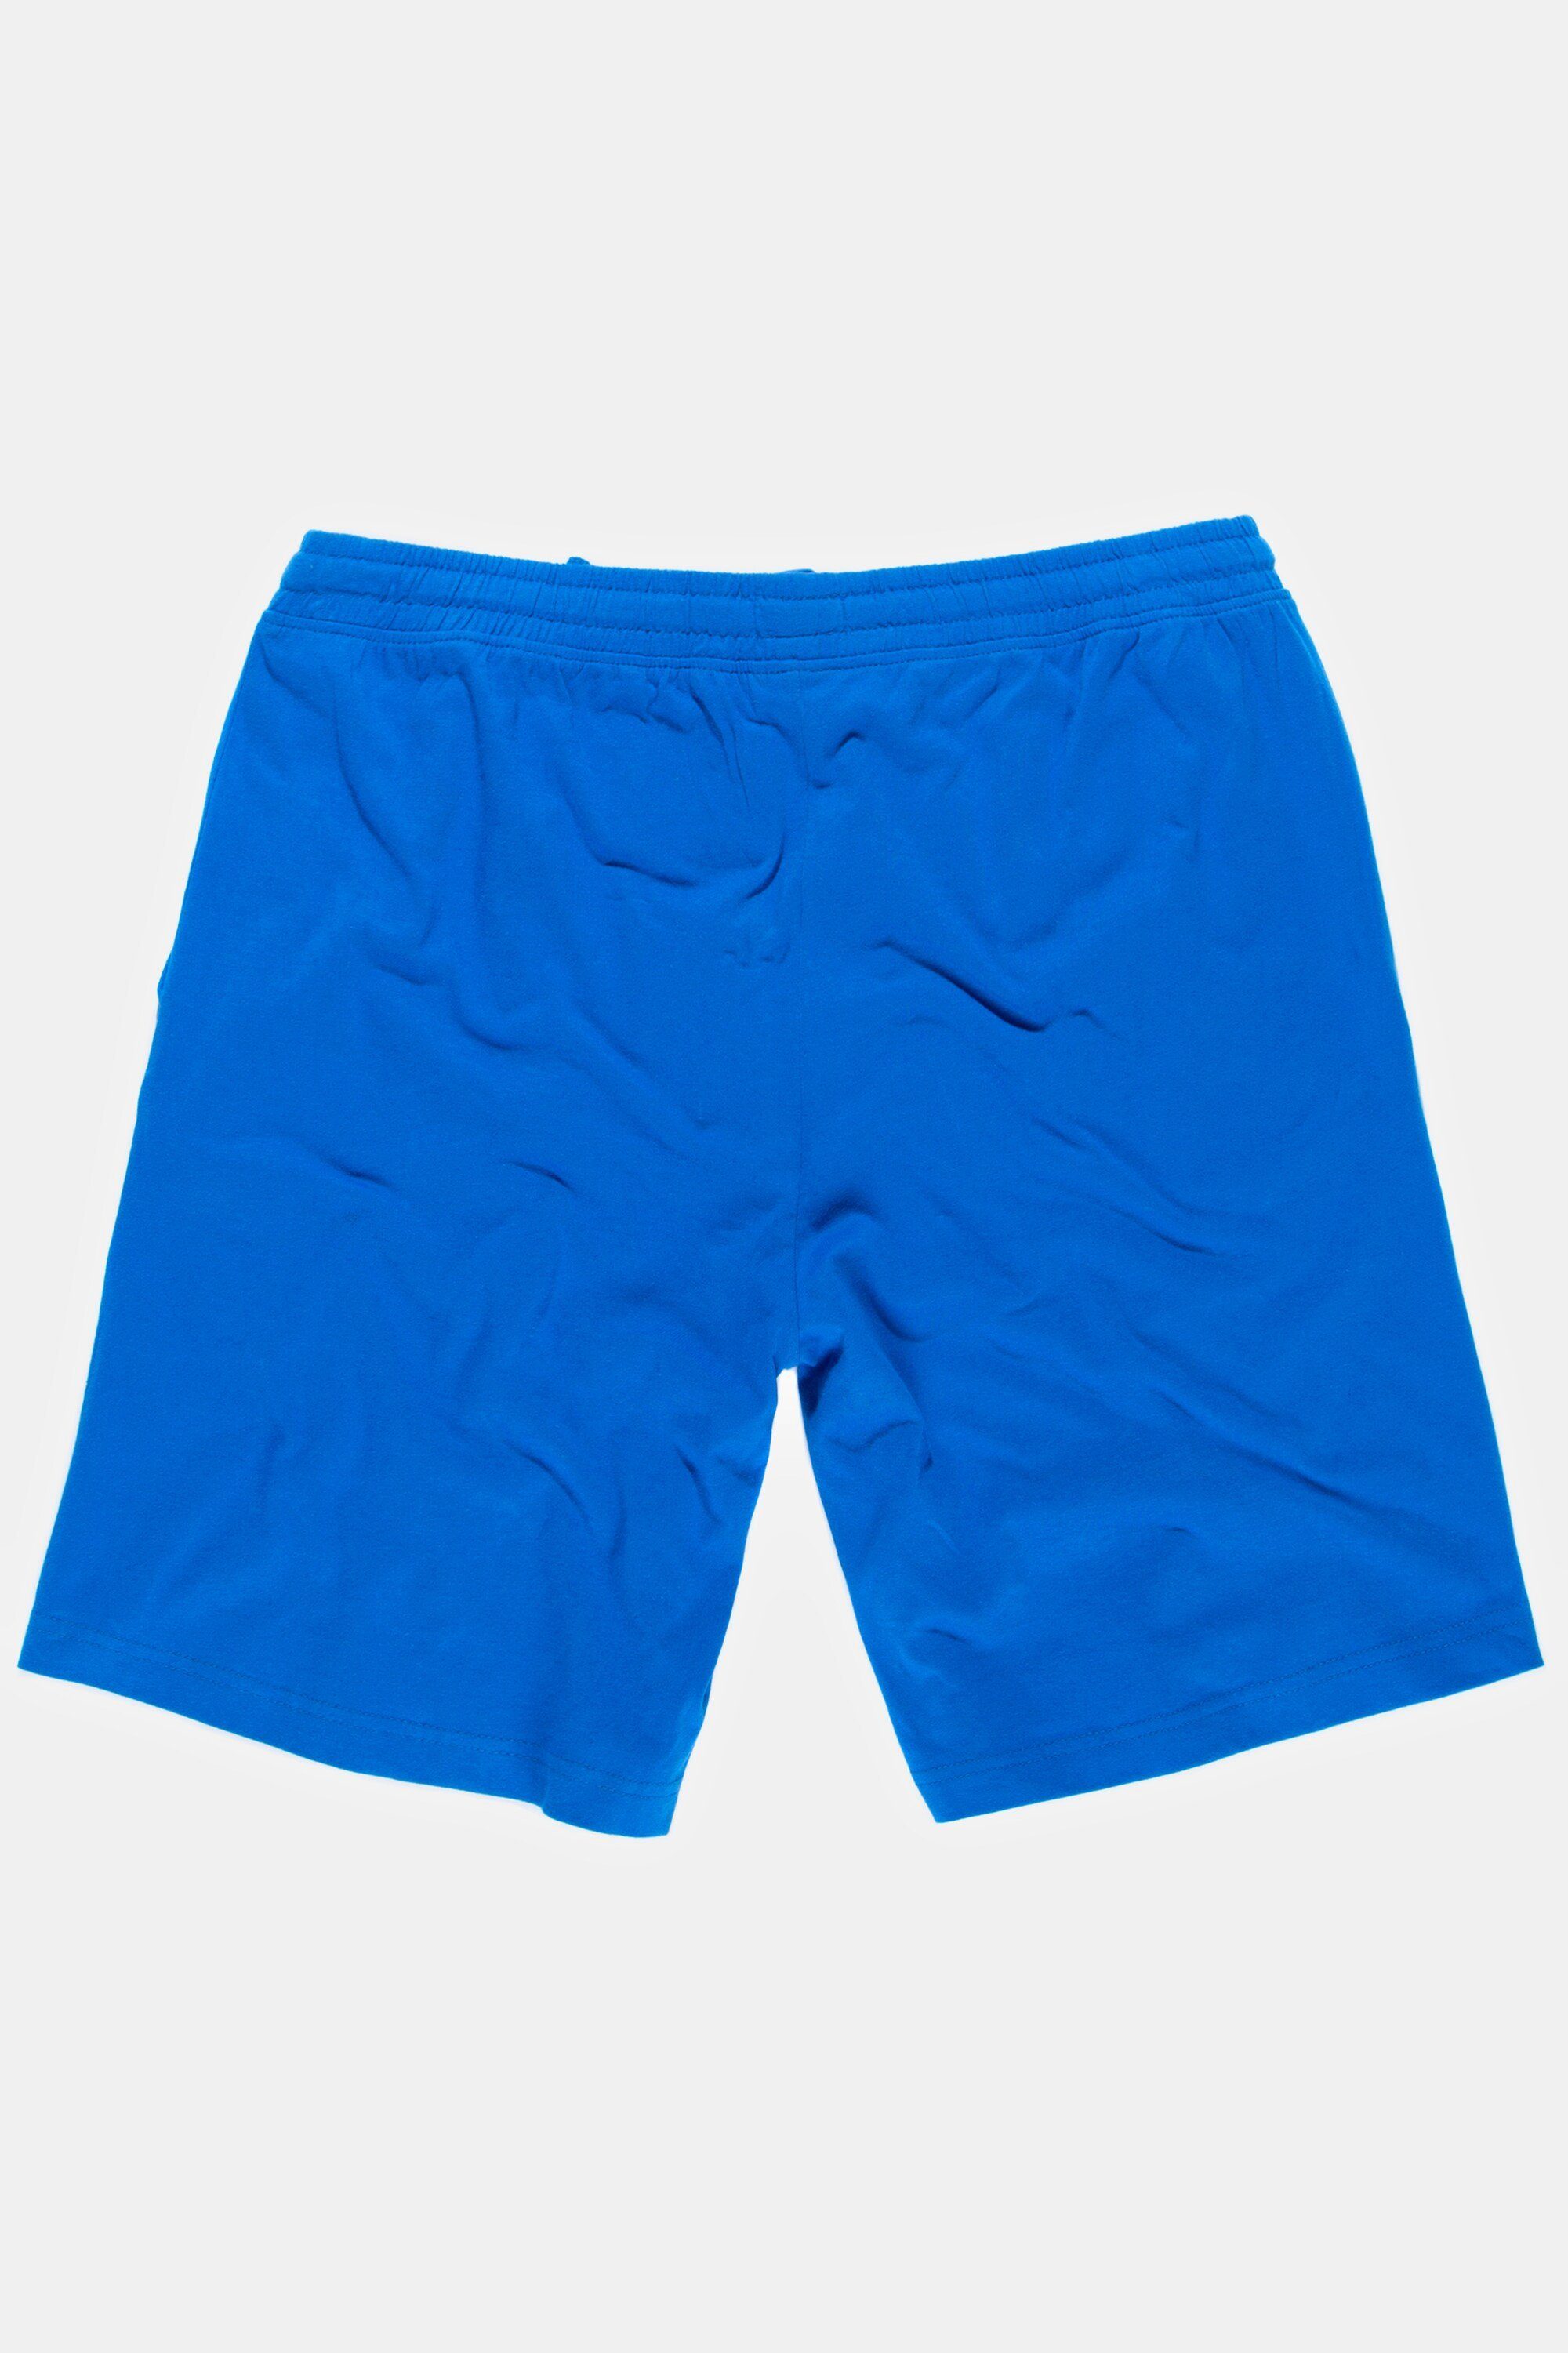 Schlafanzug Hose Schlafanzug Elastikbund JP1880 Homewear clematisblau Shorts